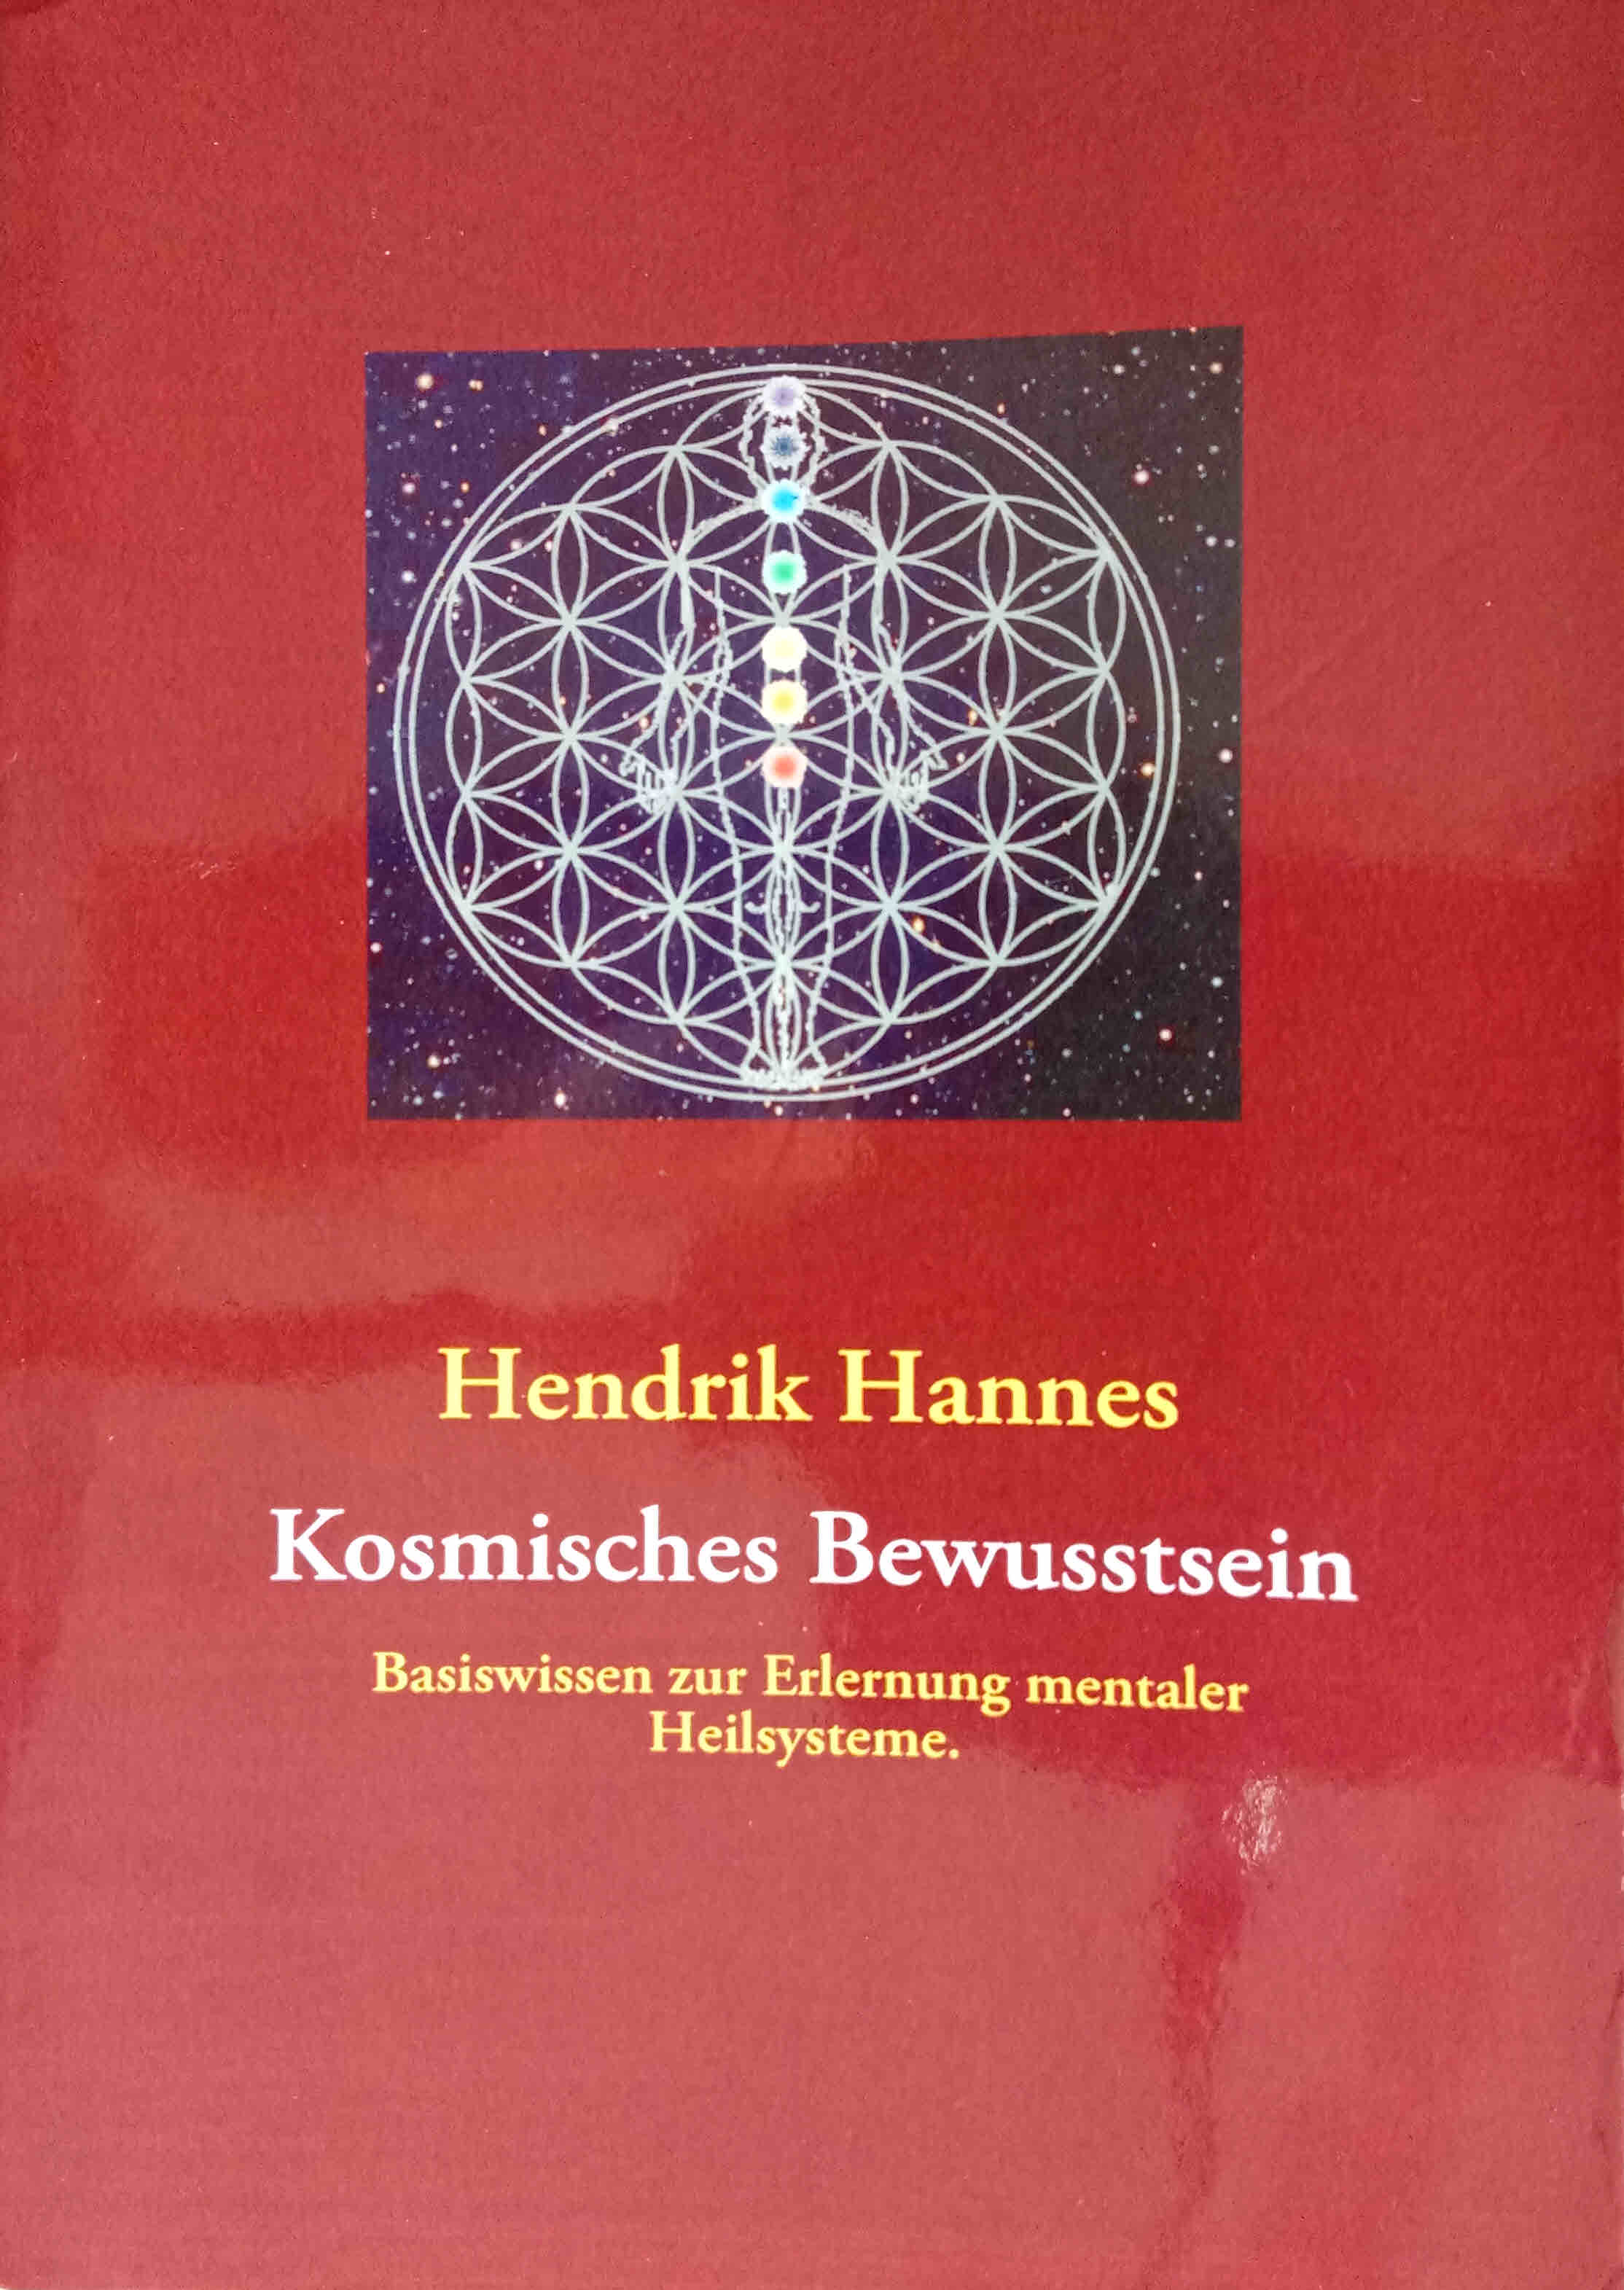 Kosmisches Bewusstsein : Basiswissen zur Erlernung mentaler Heilsysteme. - Hannes, Hendrik